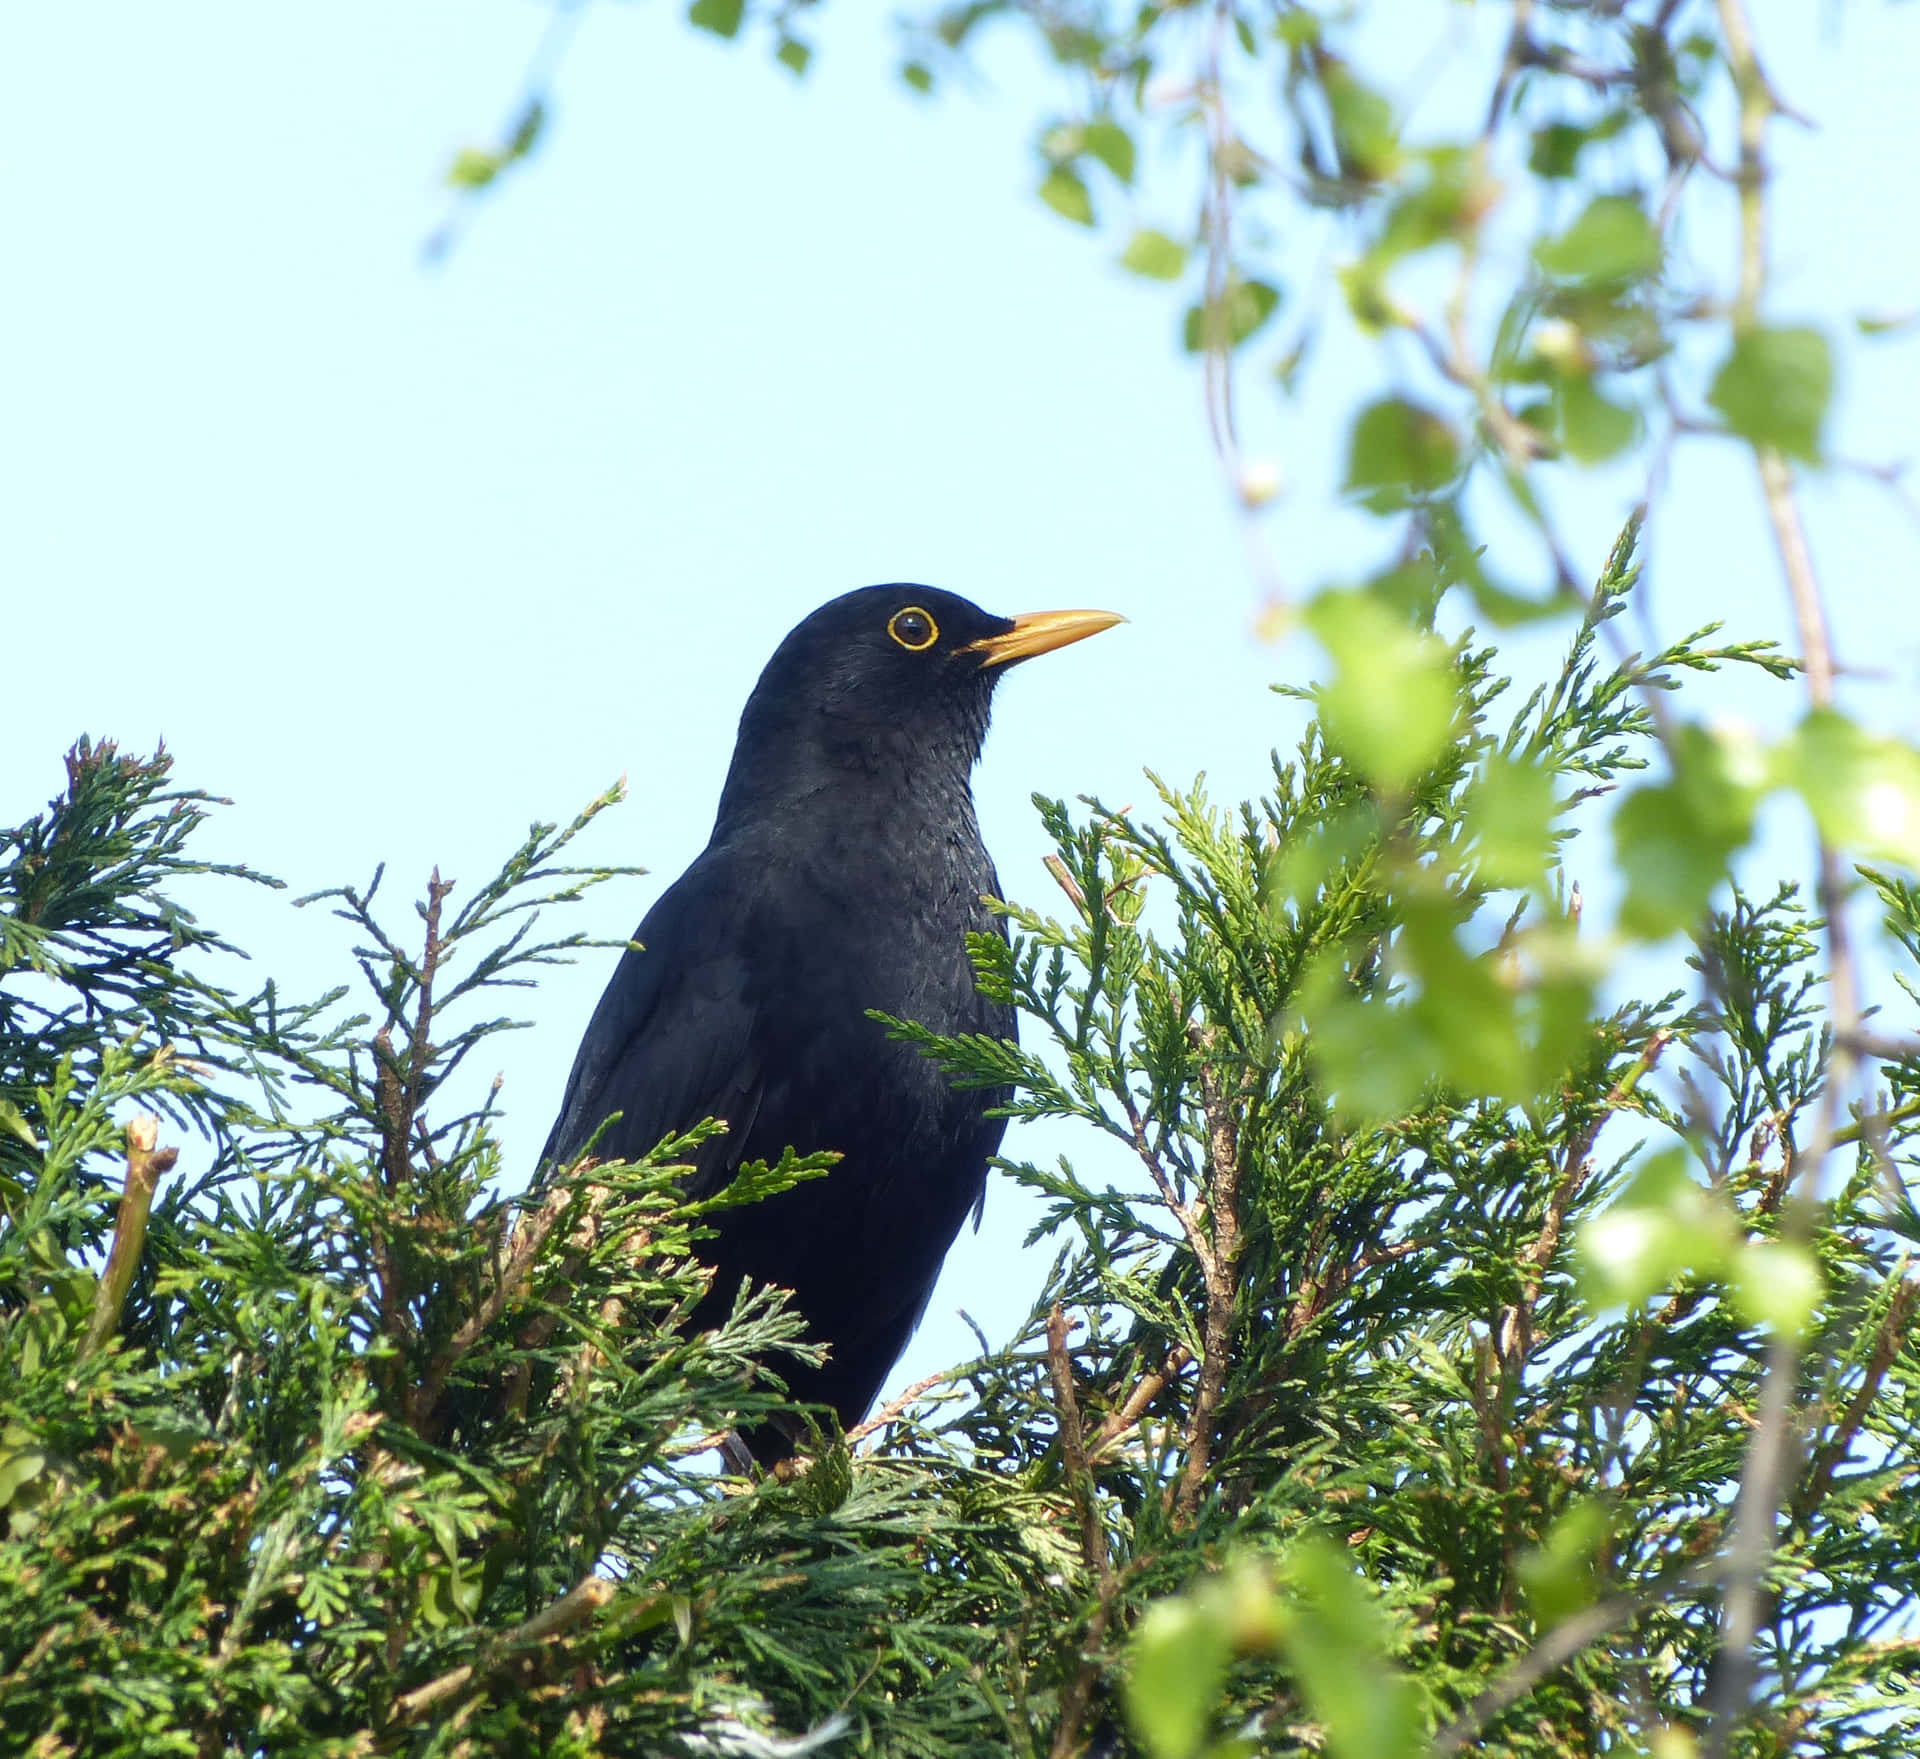 Blackbird Perchedin Greenery.jpg Wallpaper